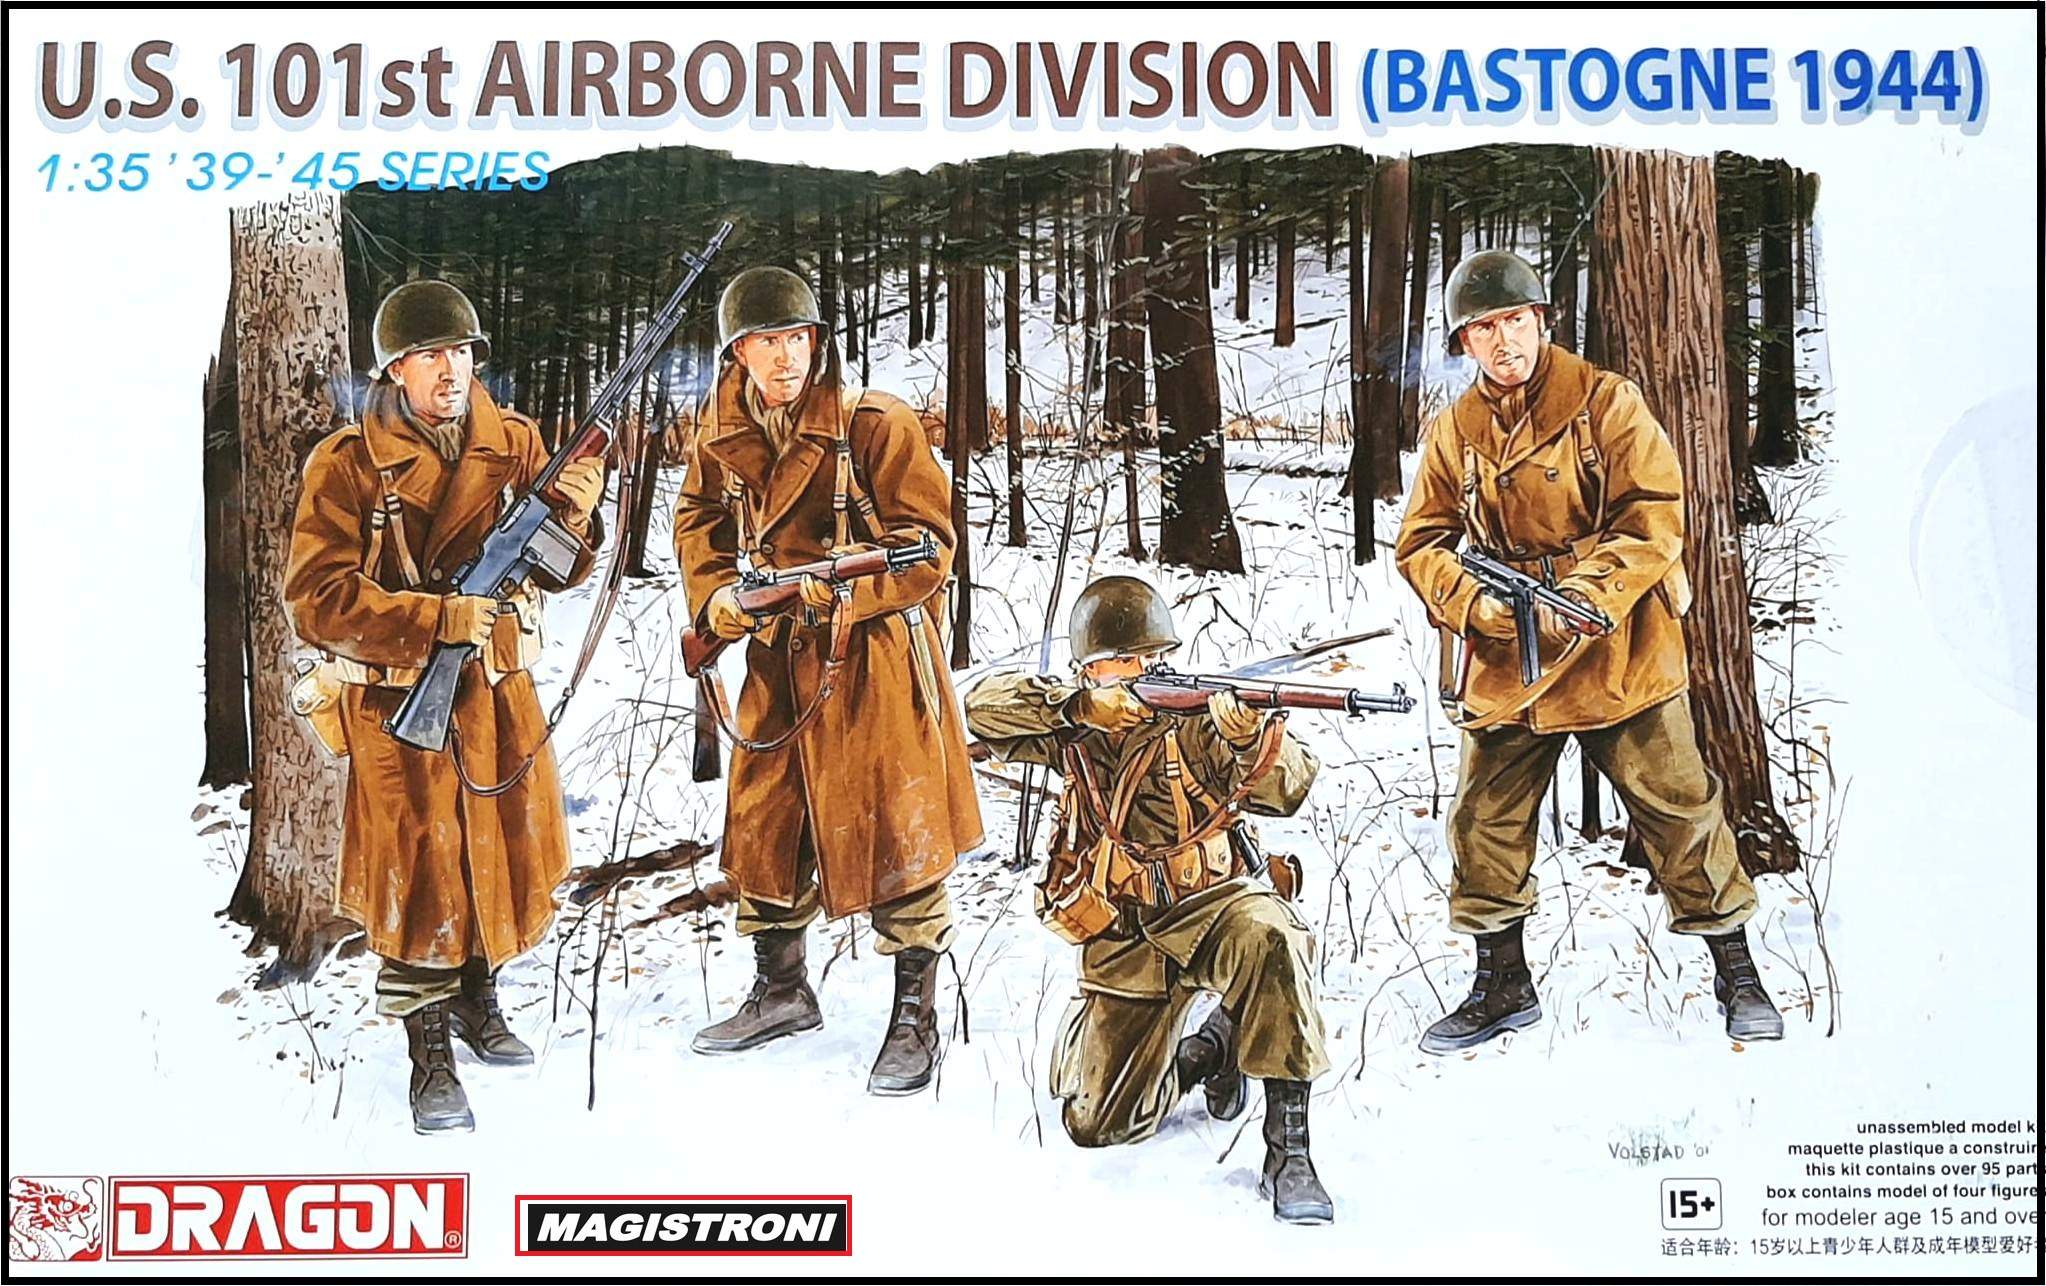 U.S. 101st AIRBORNE DIVISION (BASTOGNE 1944)